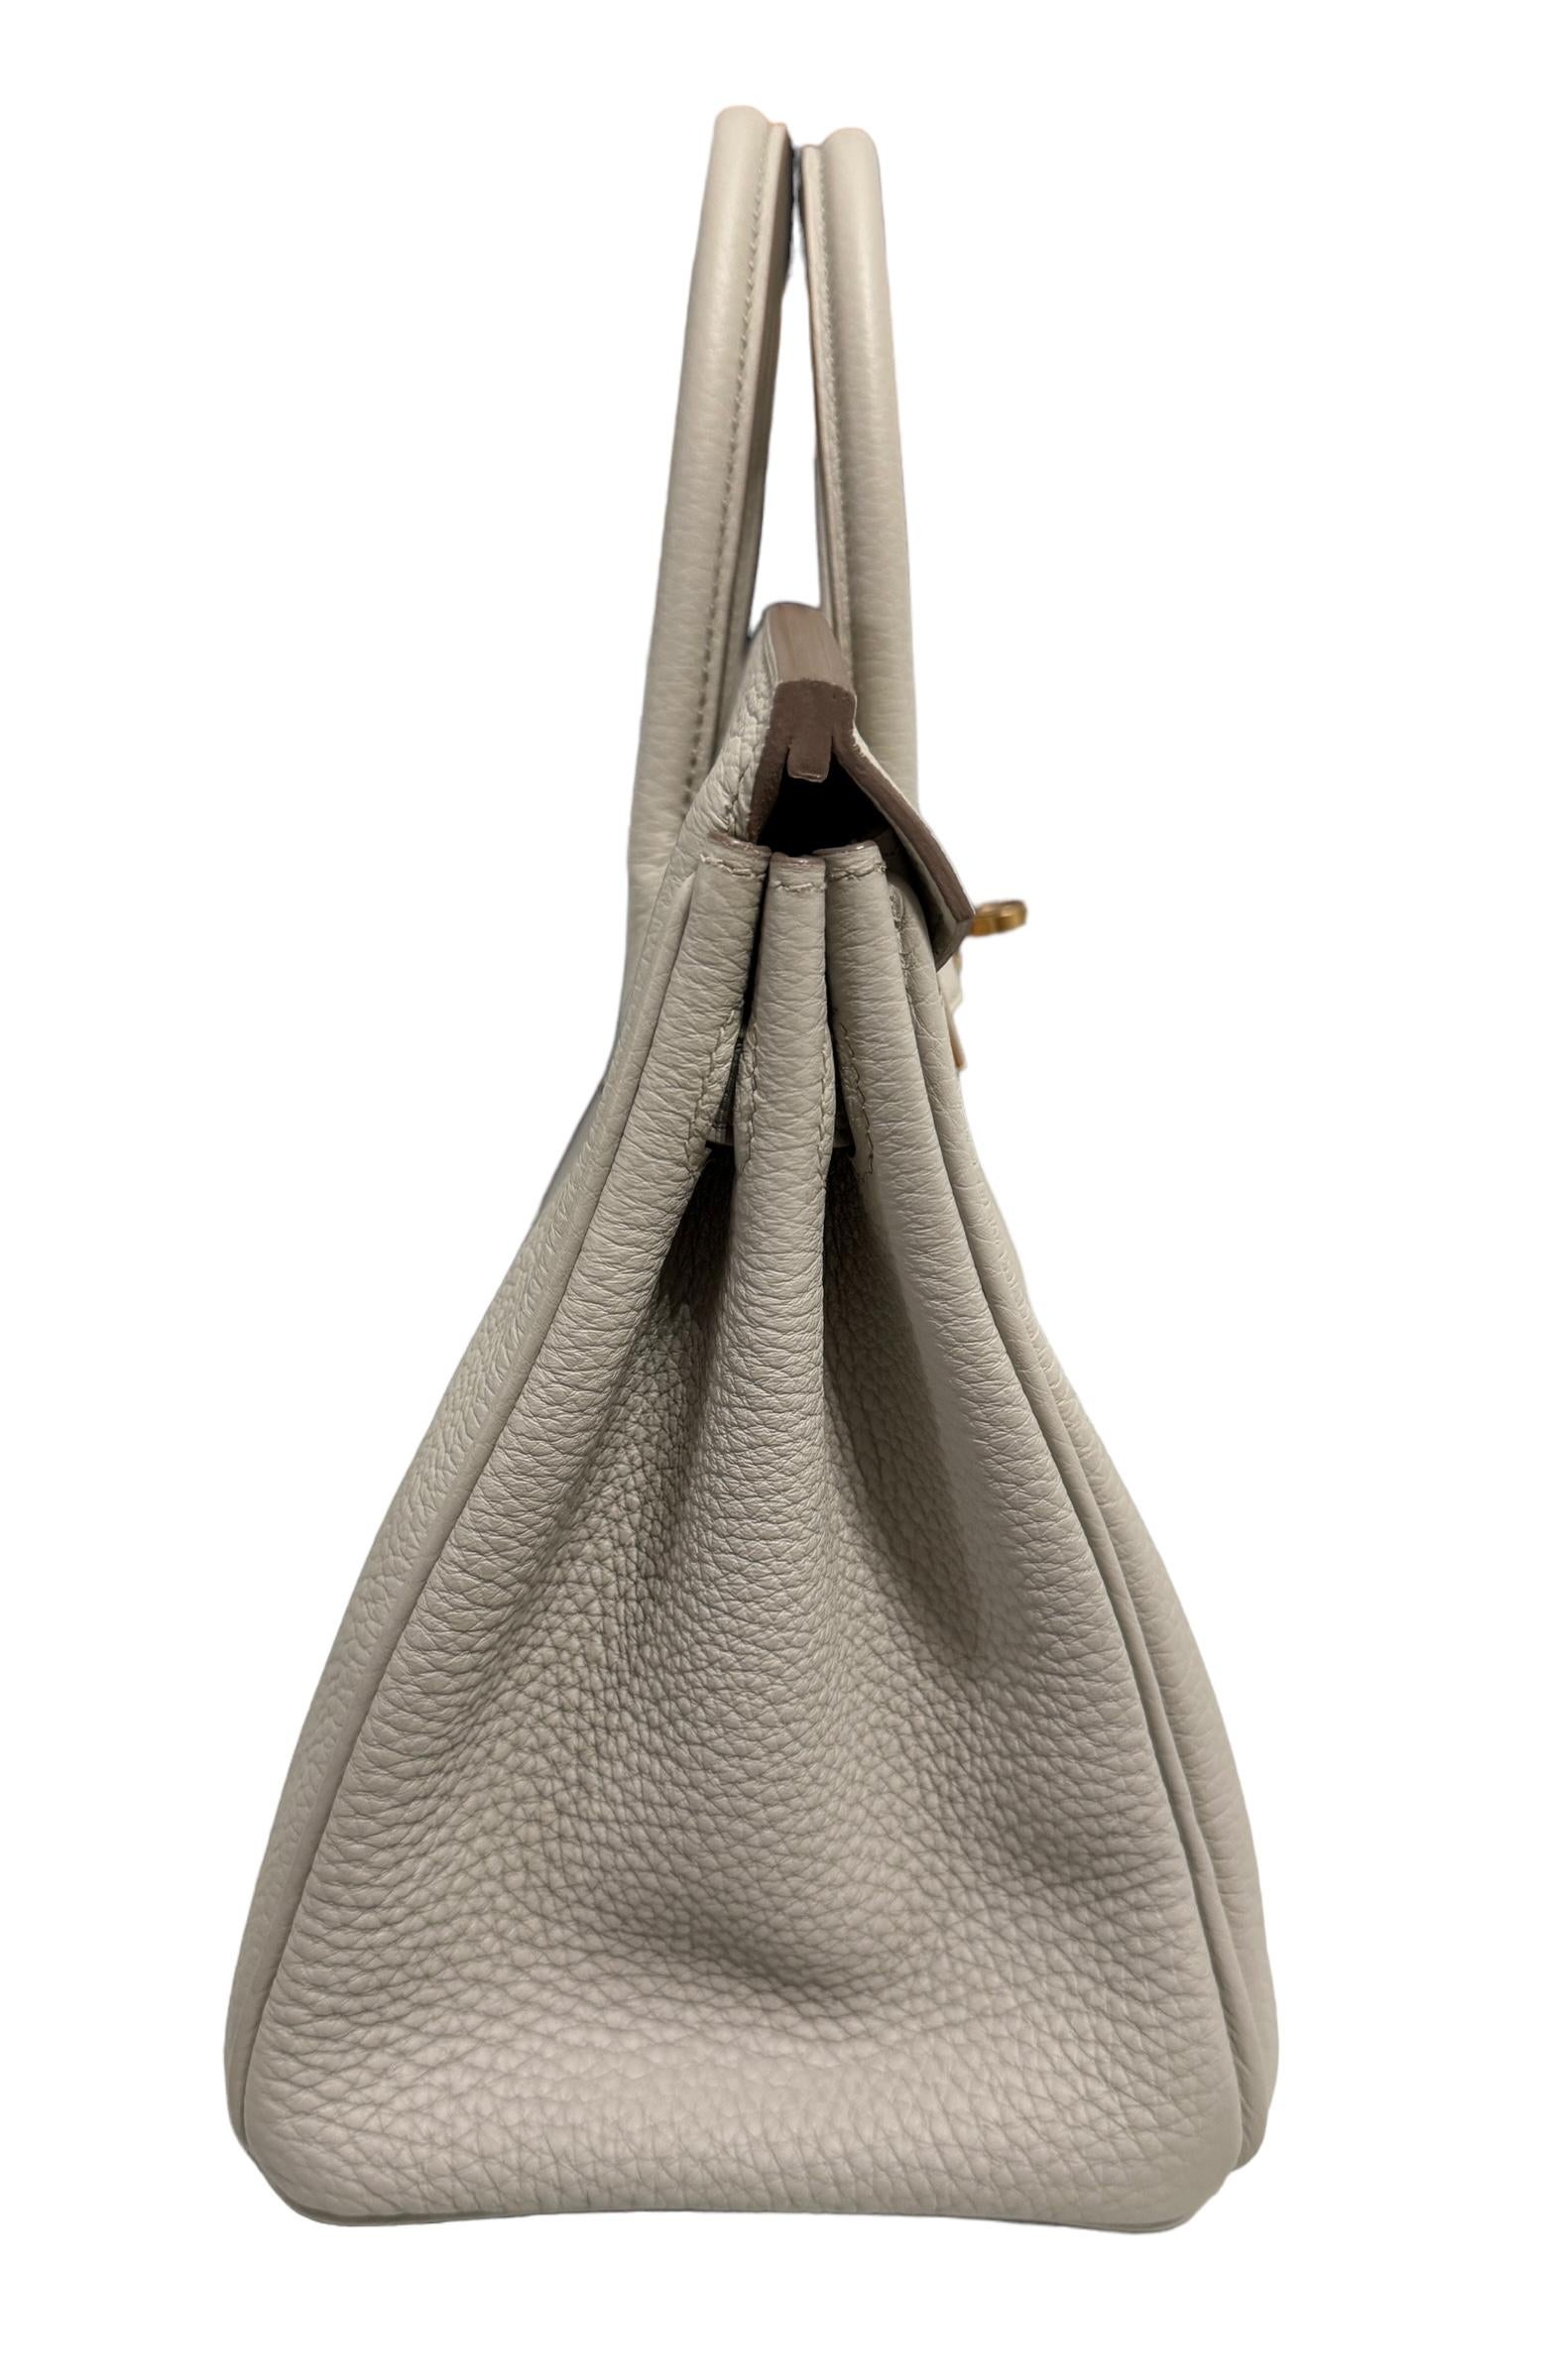 Hermes Birkin 25 Beton Beige Gray Togo Leather Handbag Rose Gold Hardware  For Sale 2